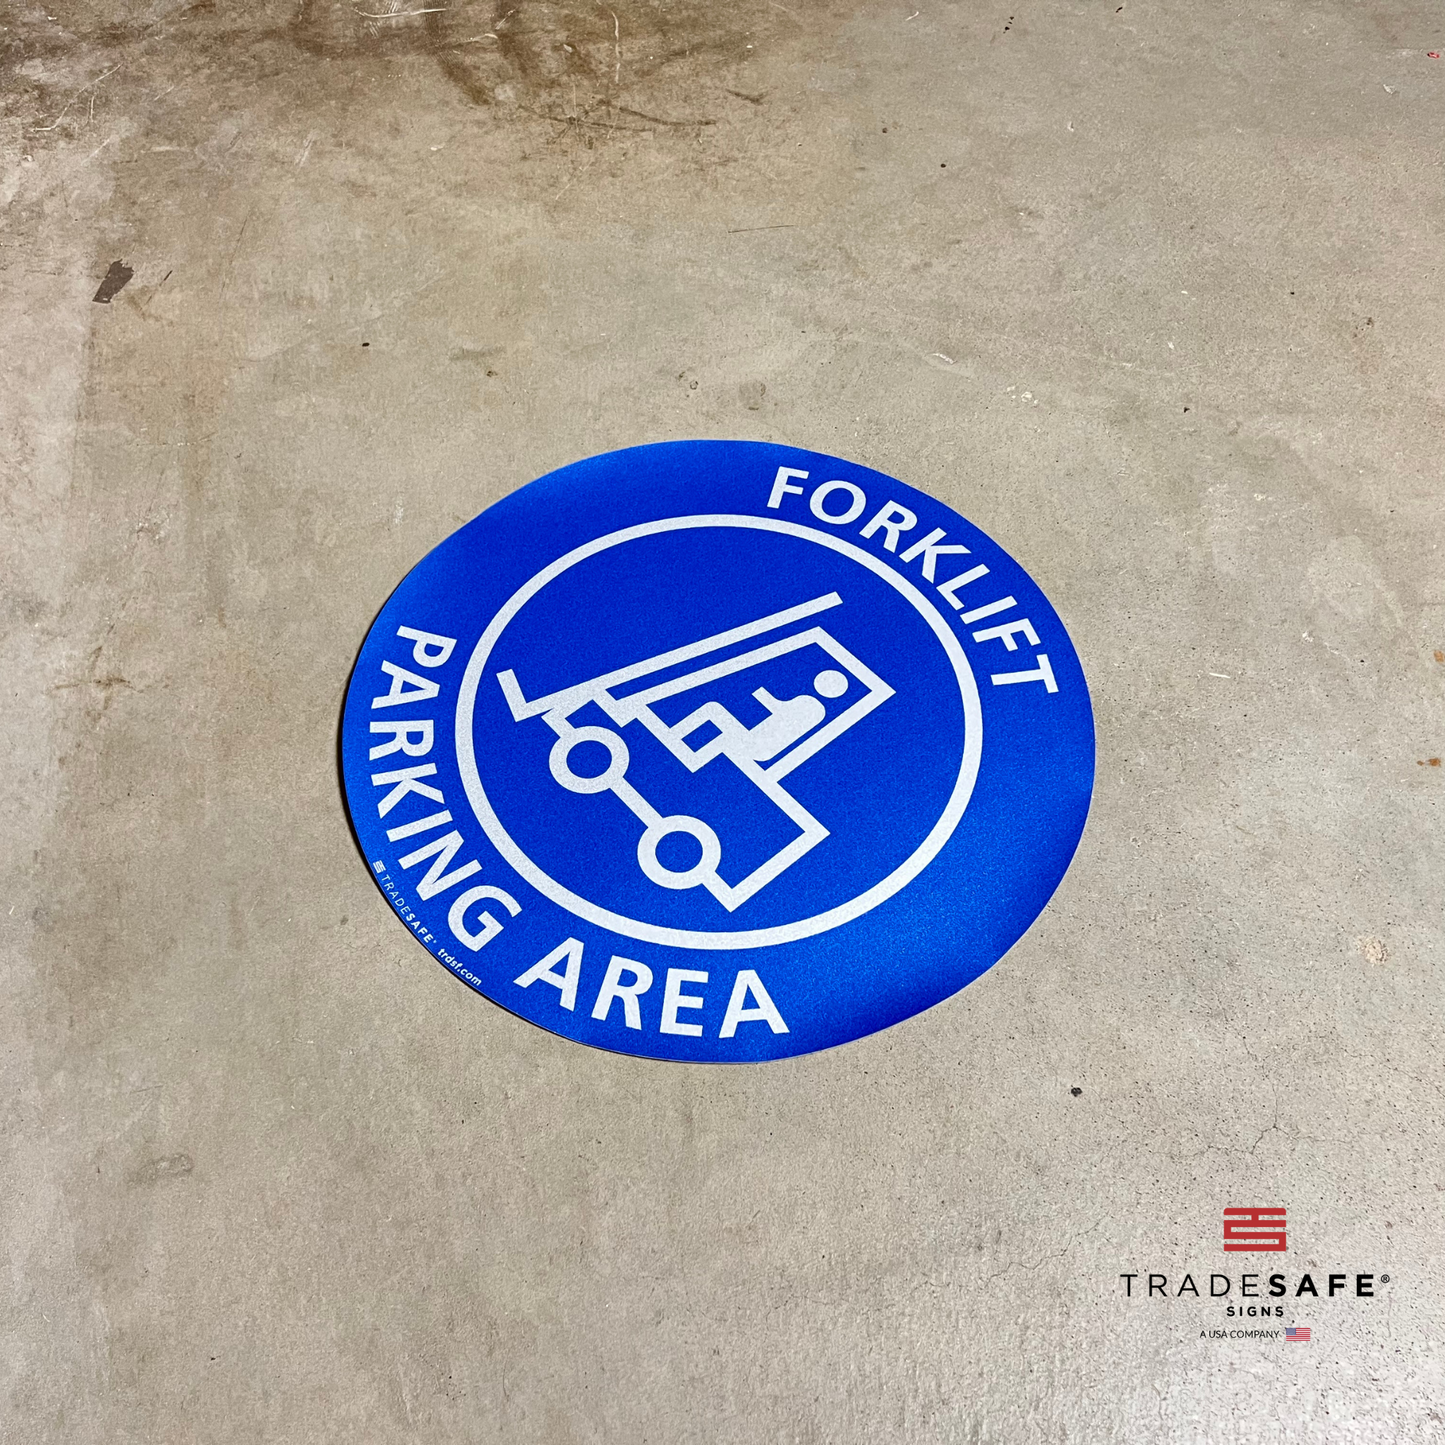 forklift parking area sign on floor